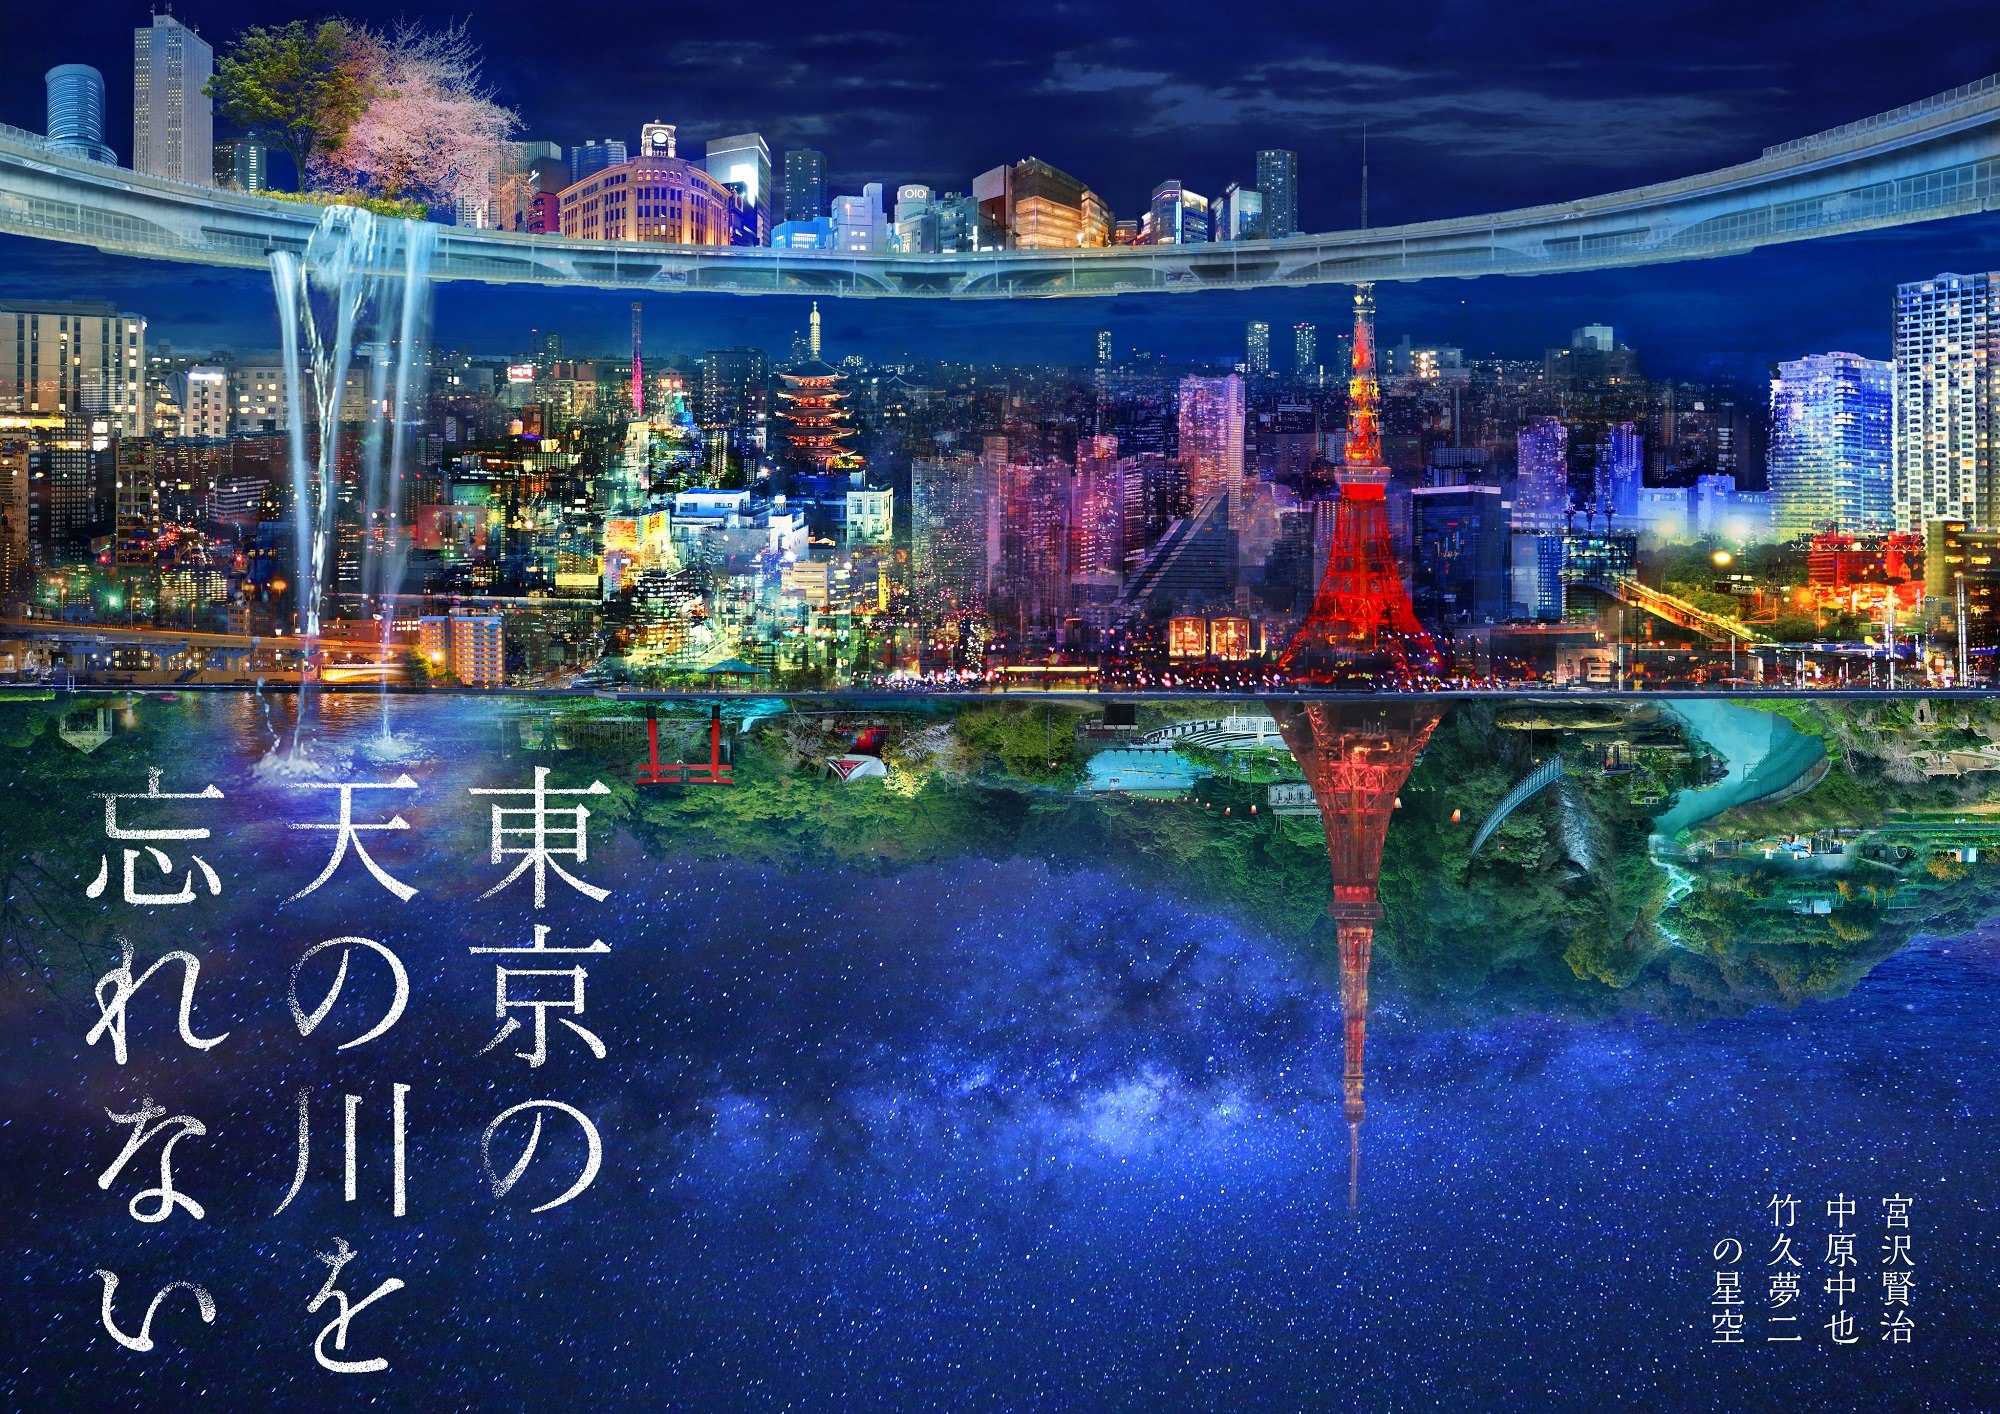 宮沢賢治、中原中也、竹久夢二が描いた天の川
プラネタリウム作品『東京の天の川を忘れない』